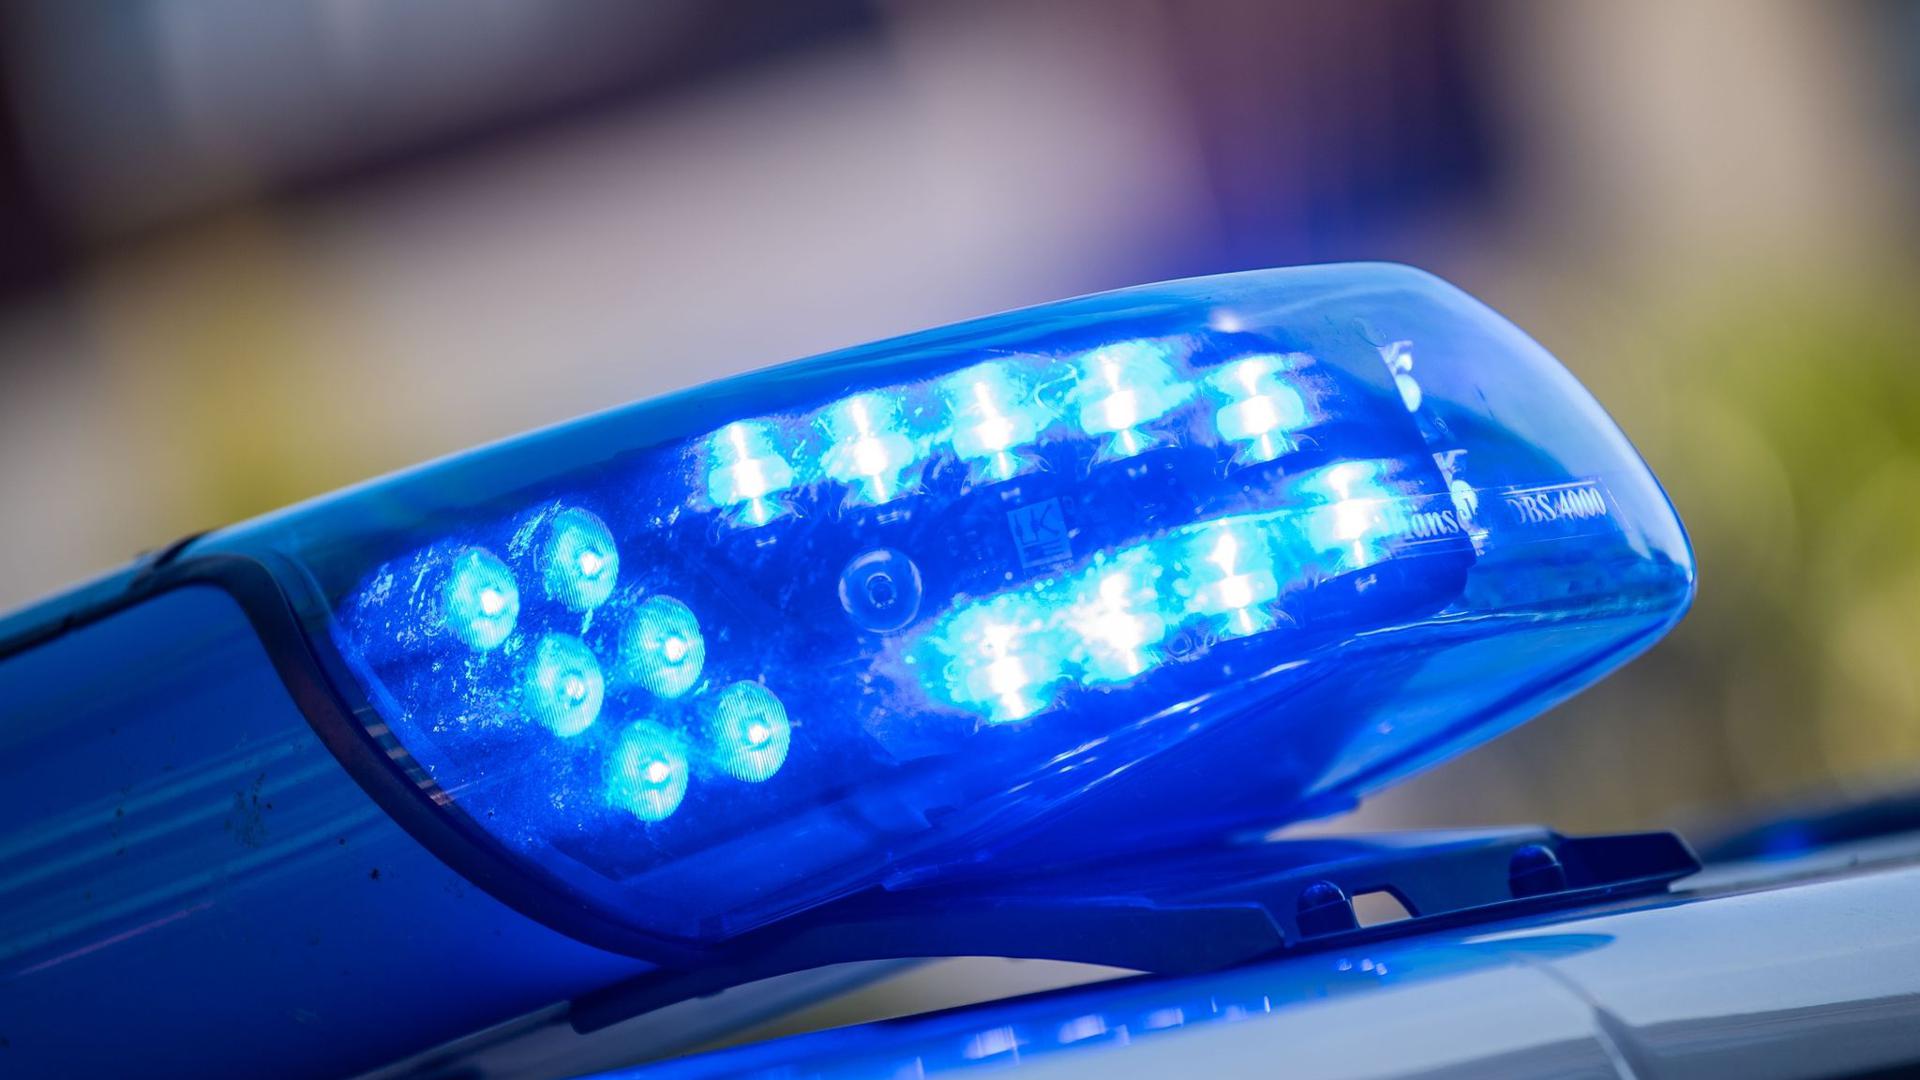 Ein Blaulicht leuchtet auf einem Polizeiwagen.